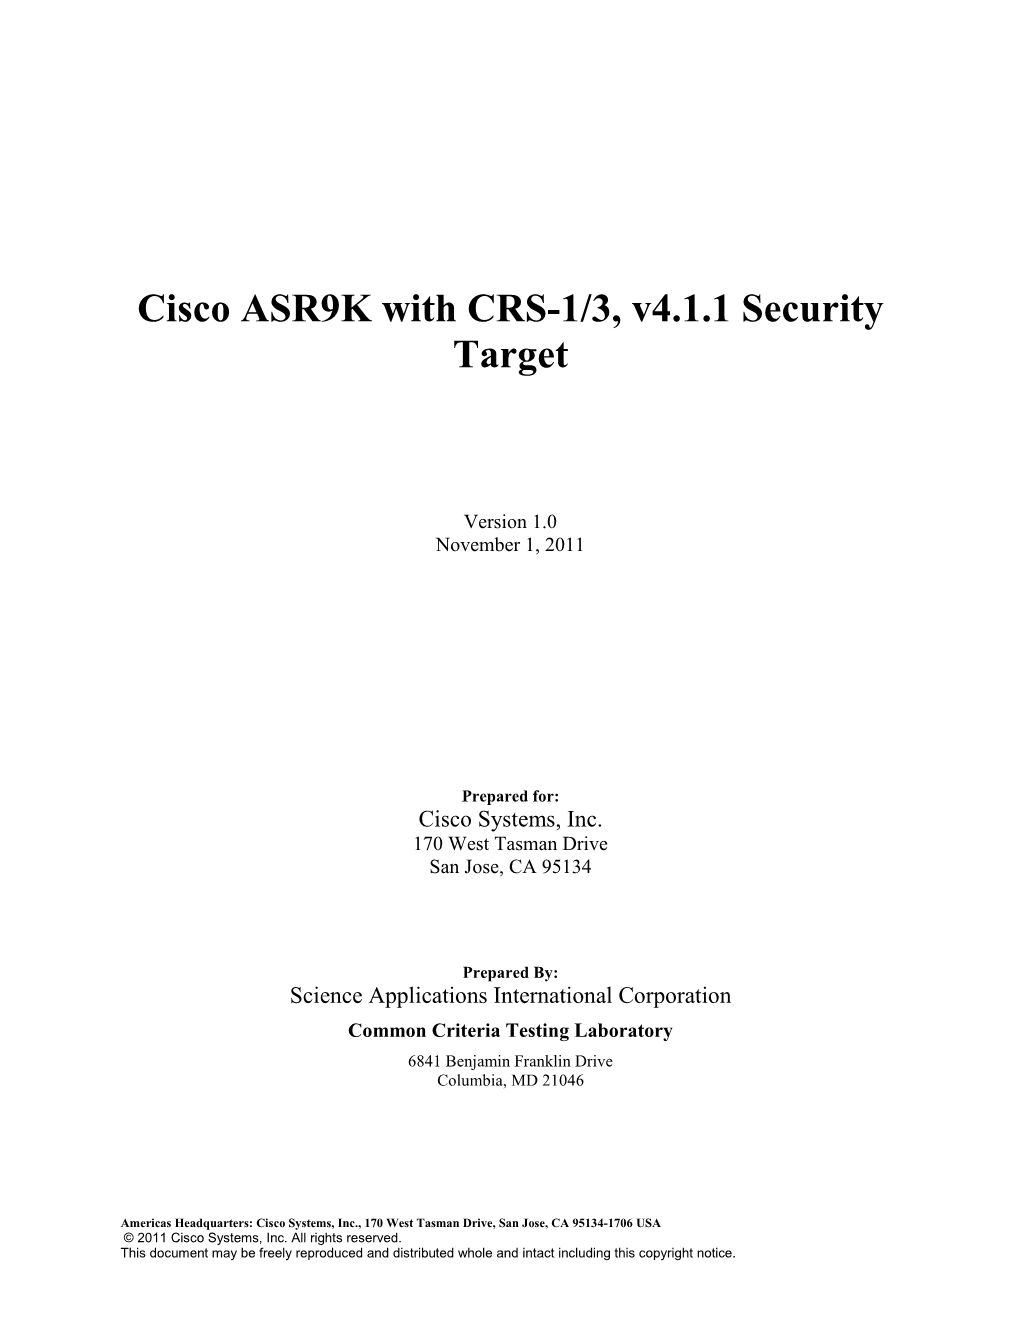 Cisco ASR9K with CRS-1/3, V4.1.1 Security Target